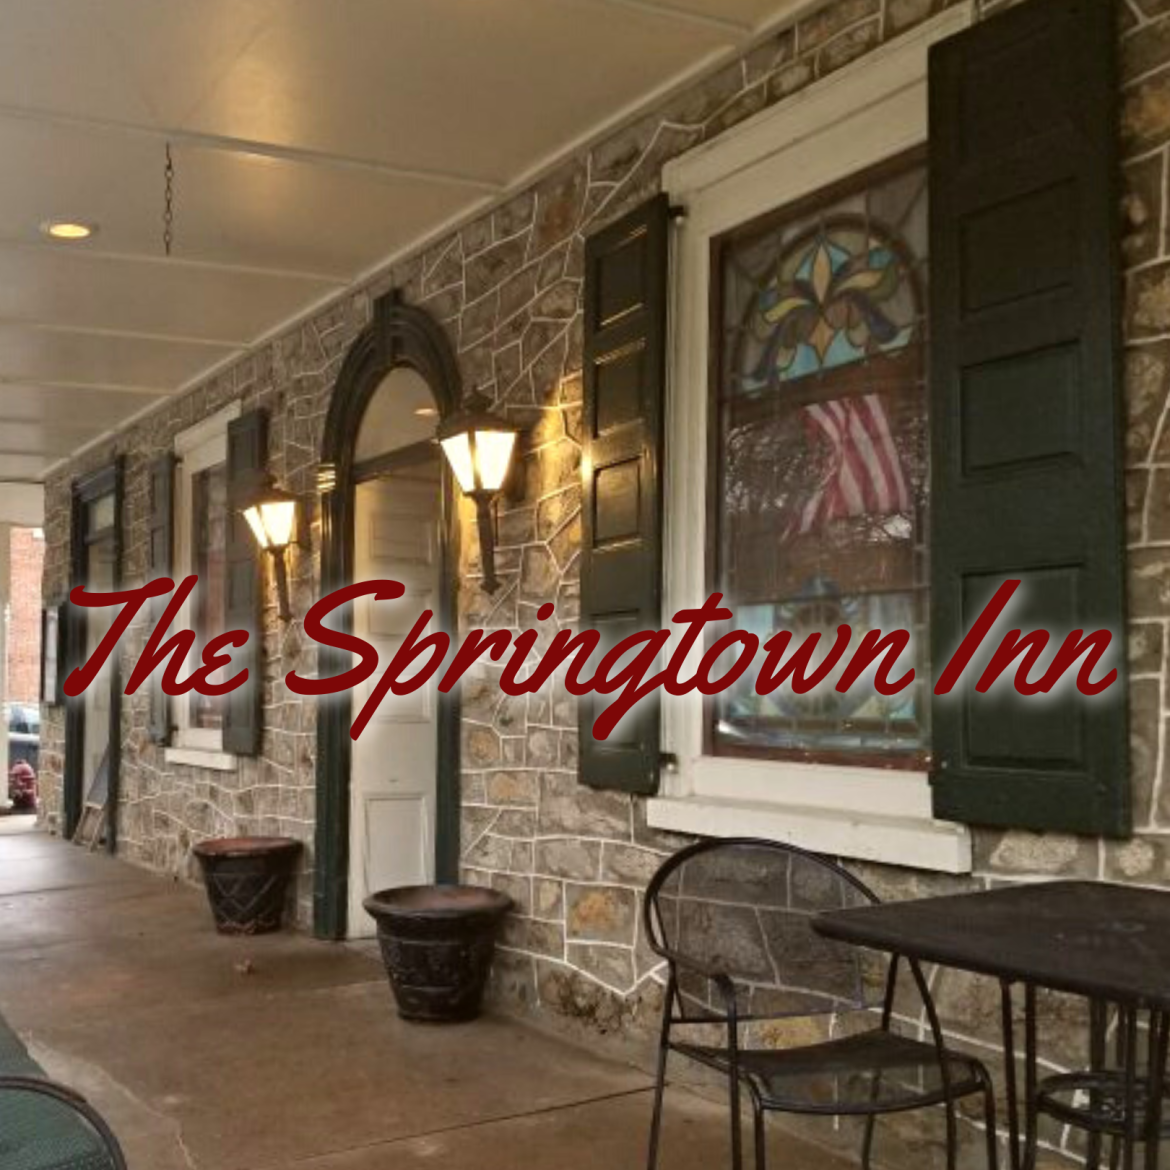 Springtown Inn